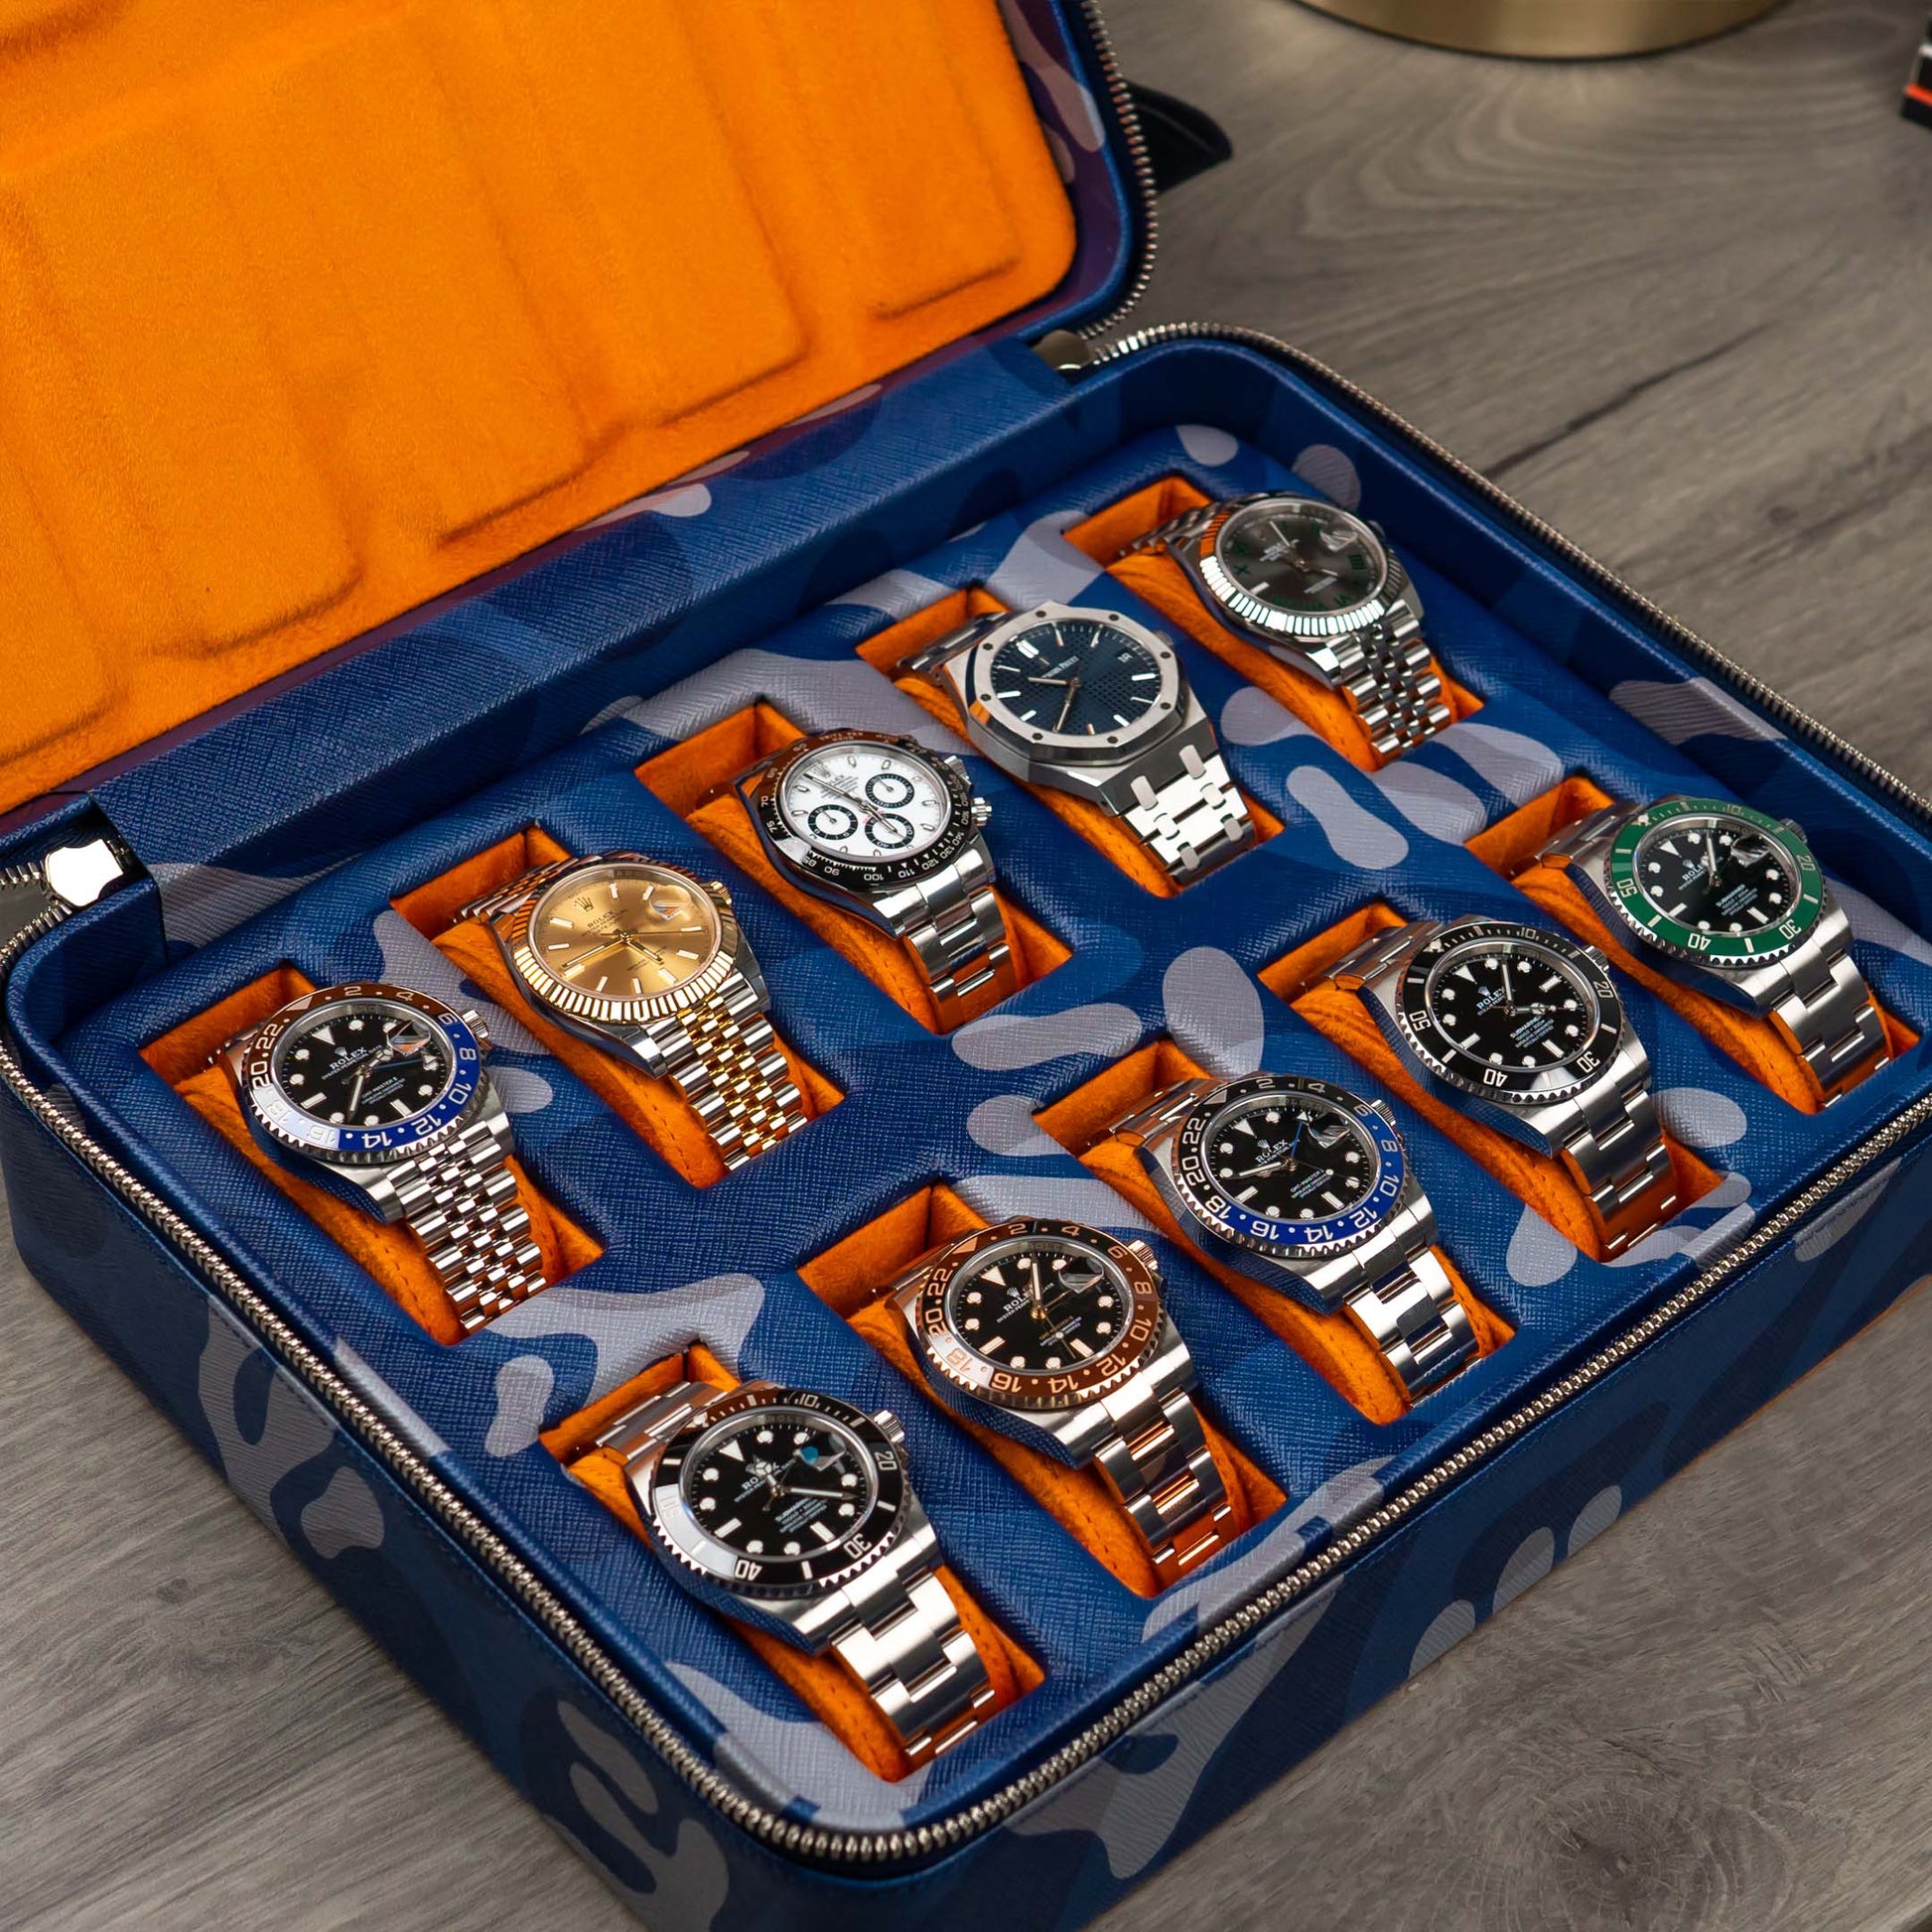 Blue Camo Watch Box – Ten Watches